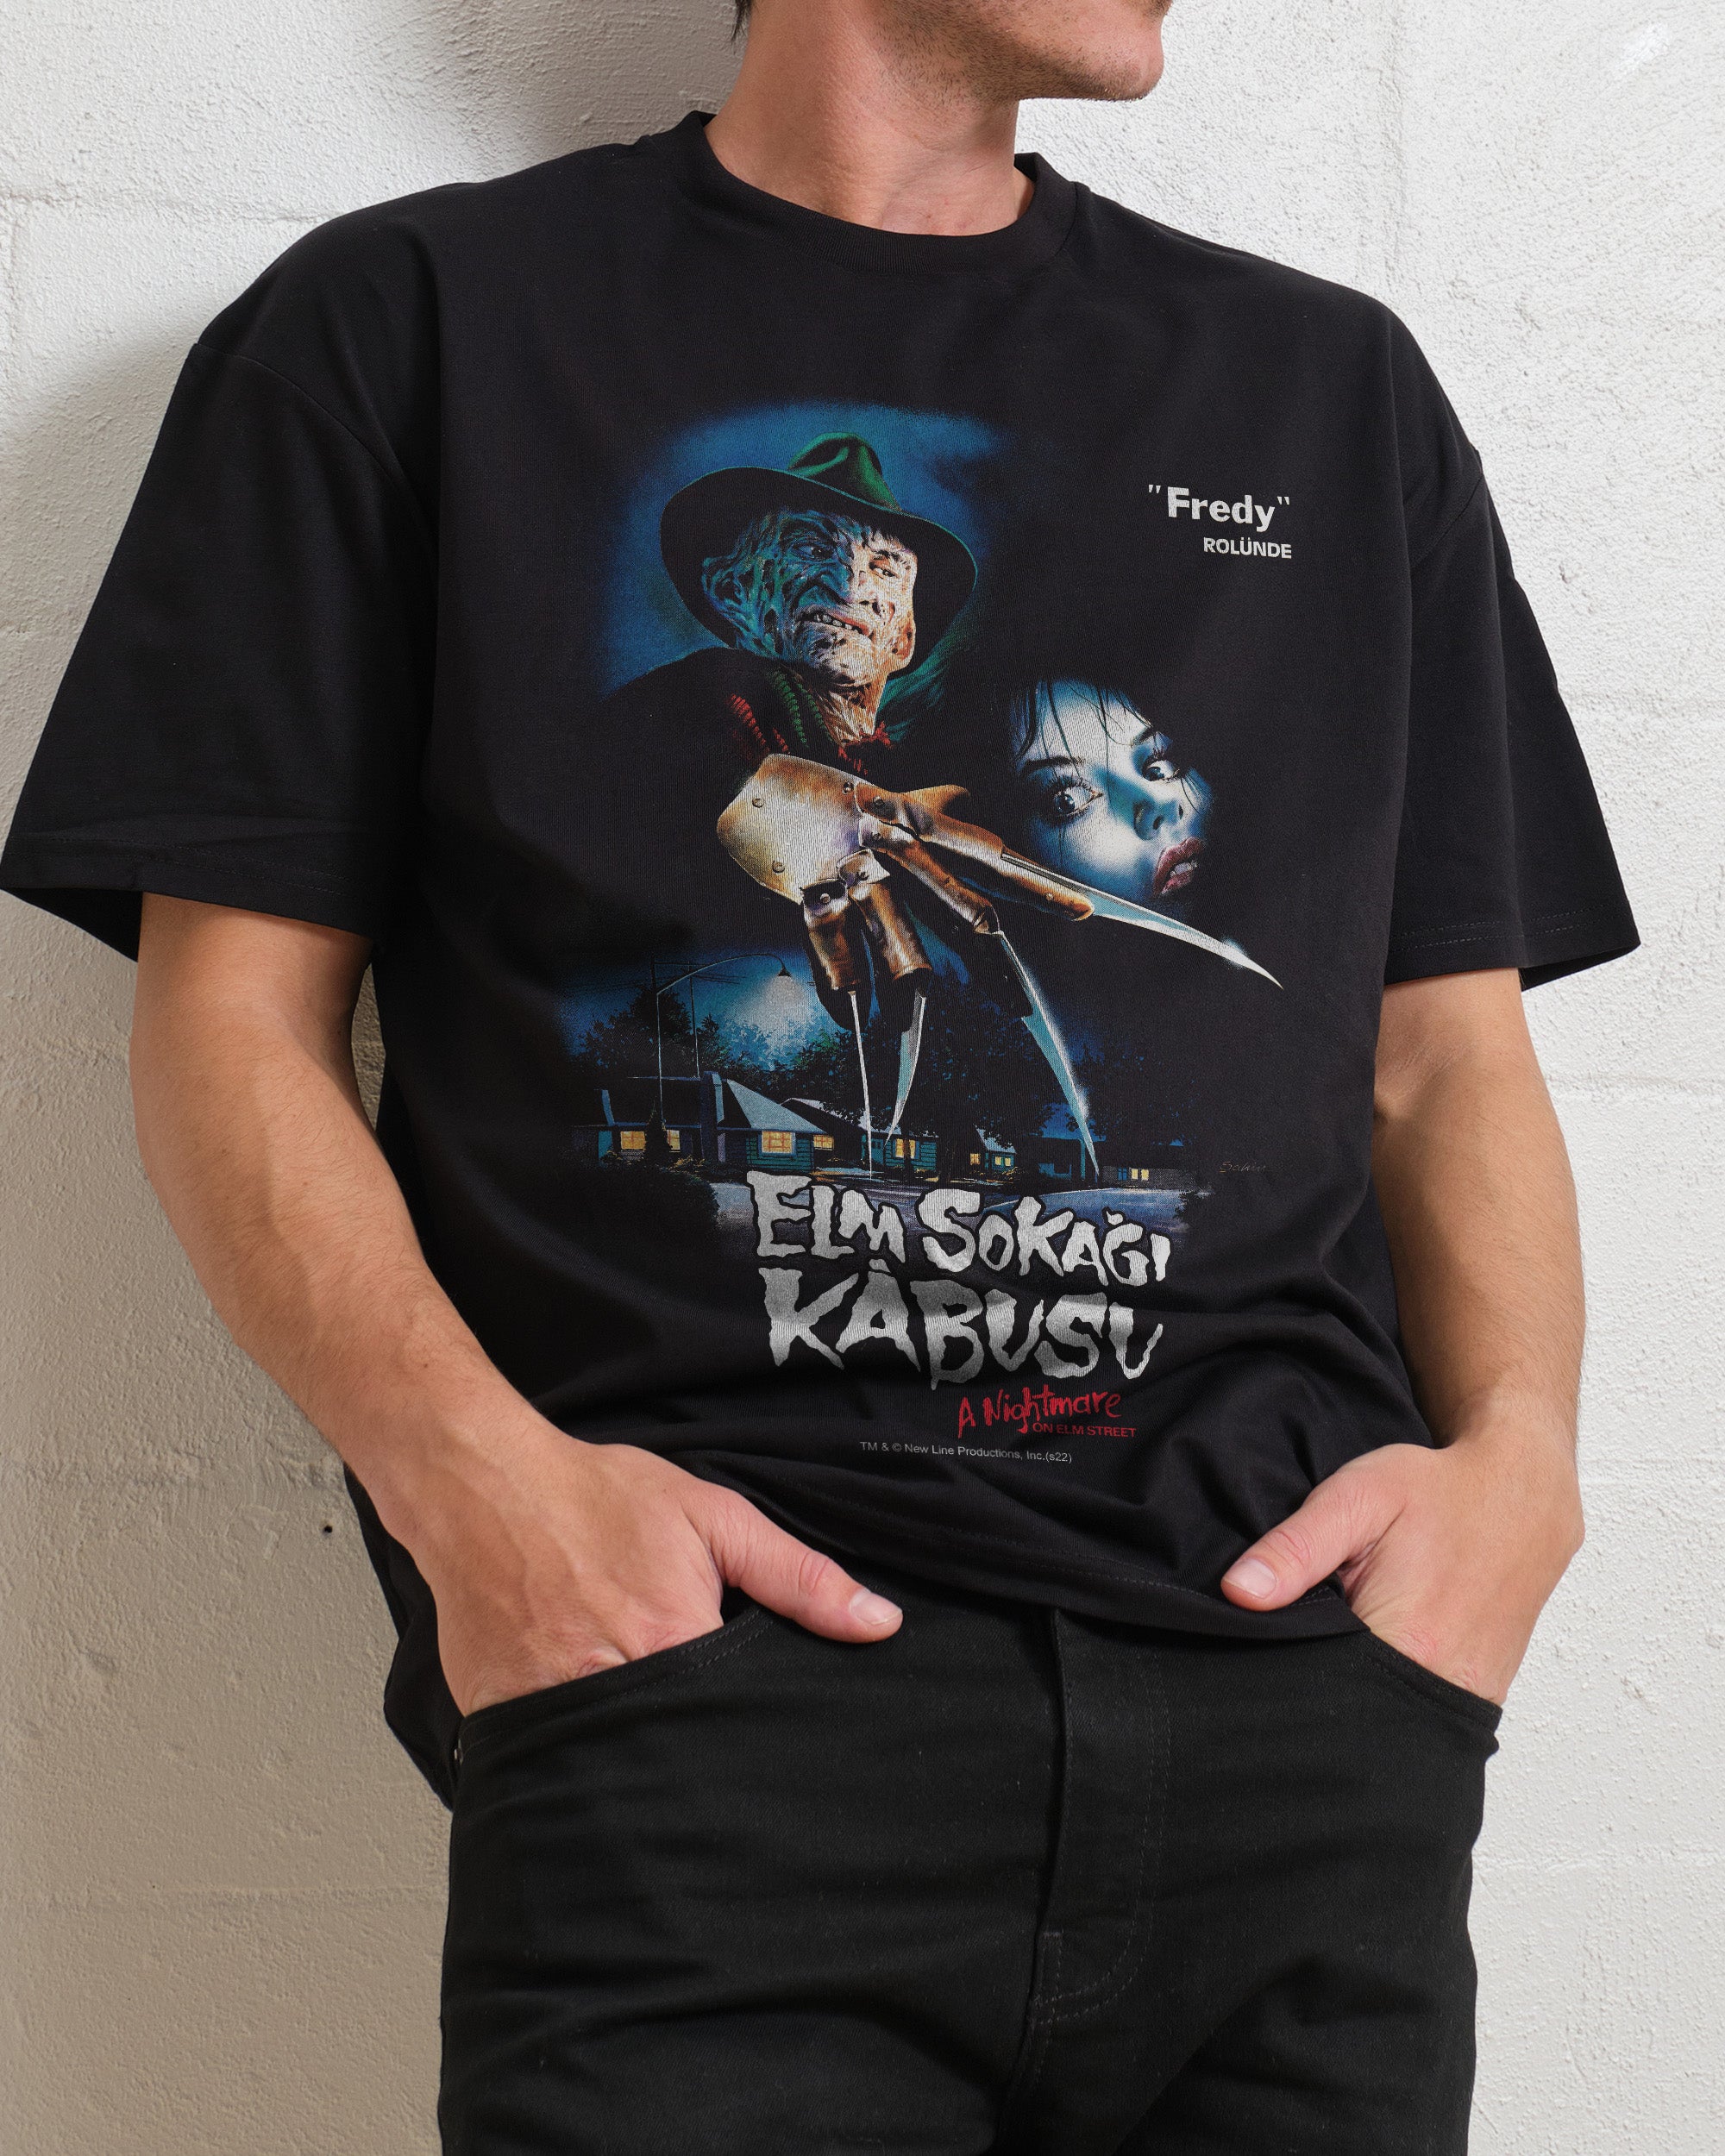 Freddy Krueger Elm Sokagi Kabusu T-Shirt